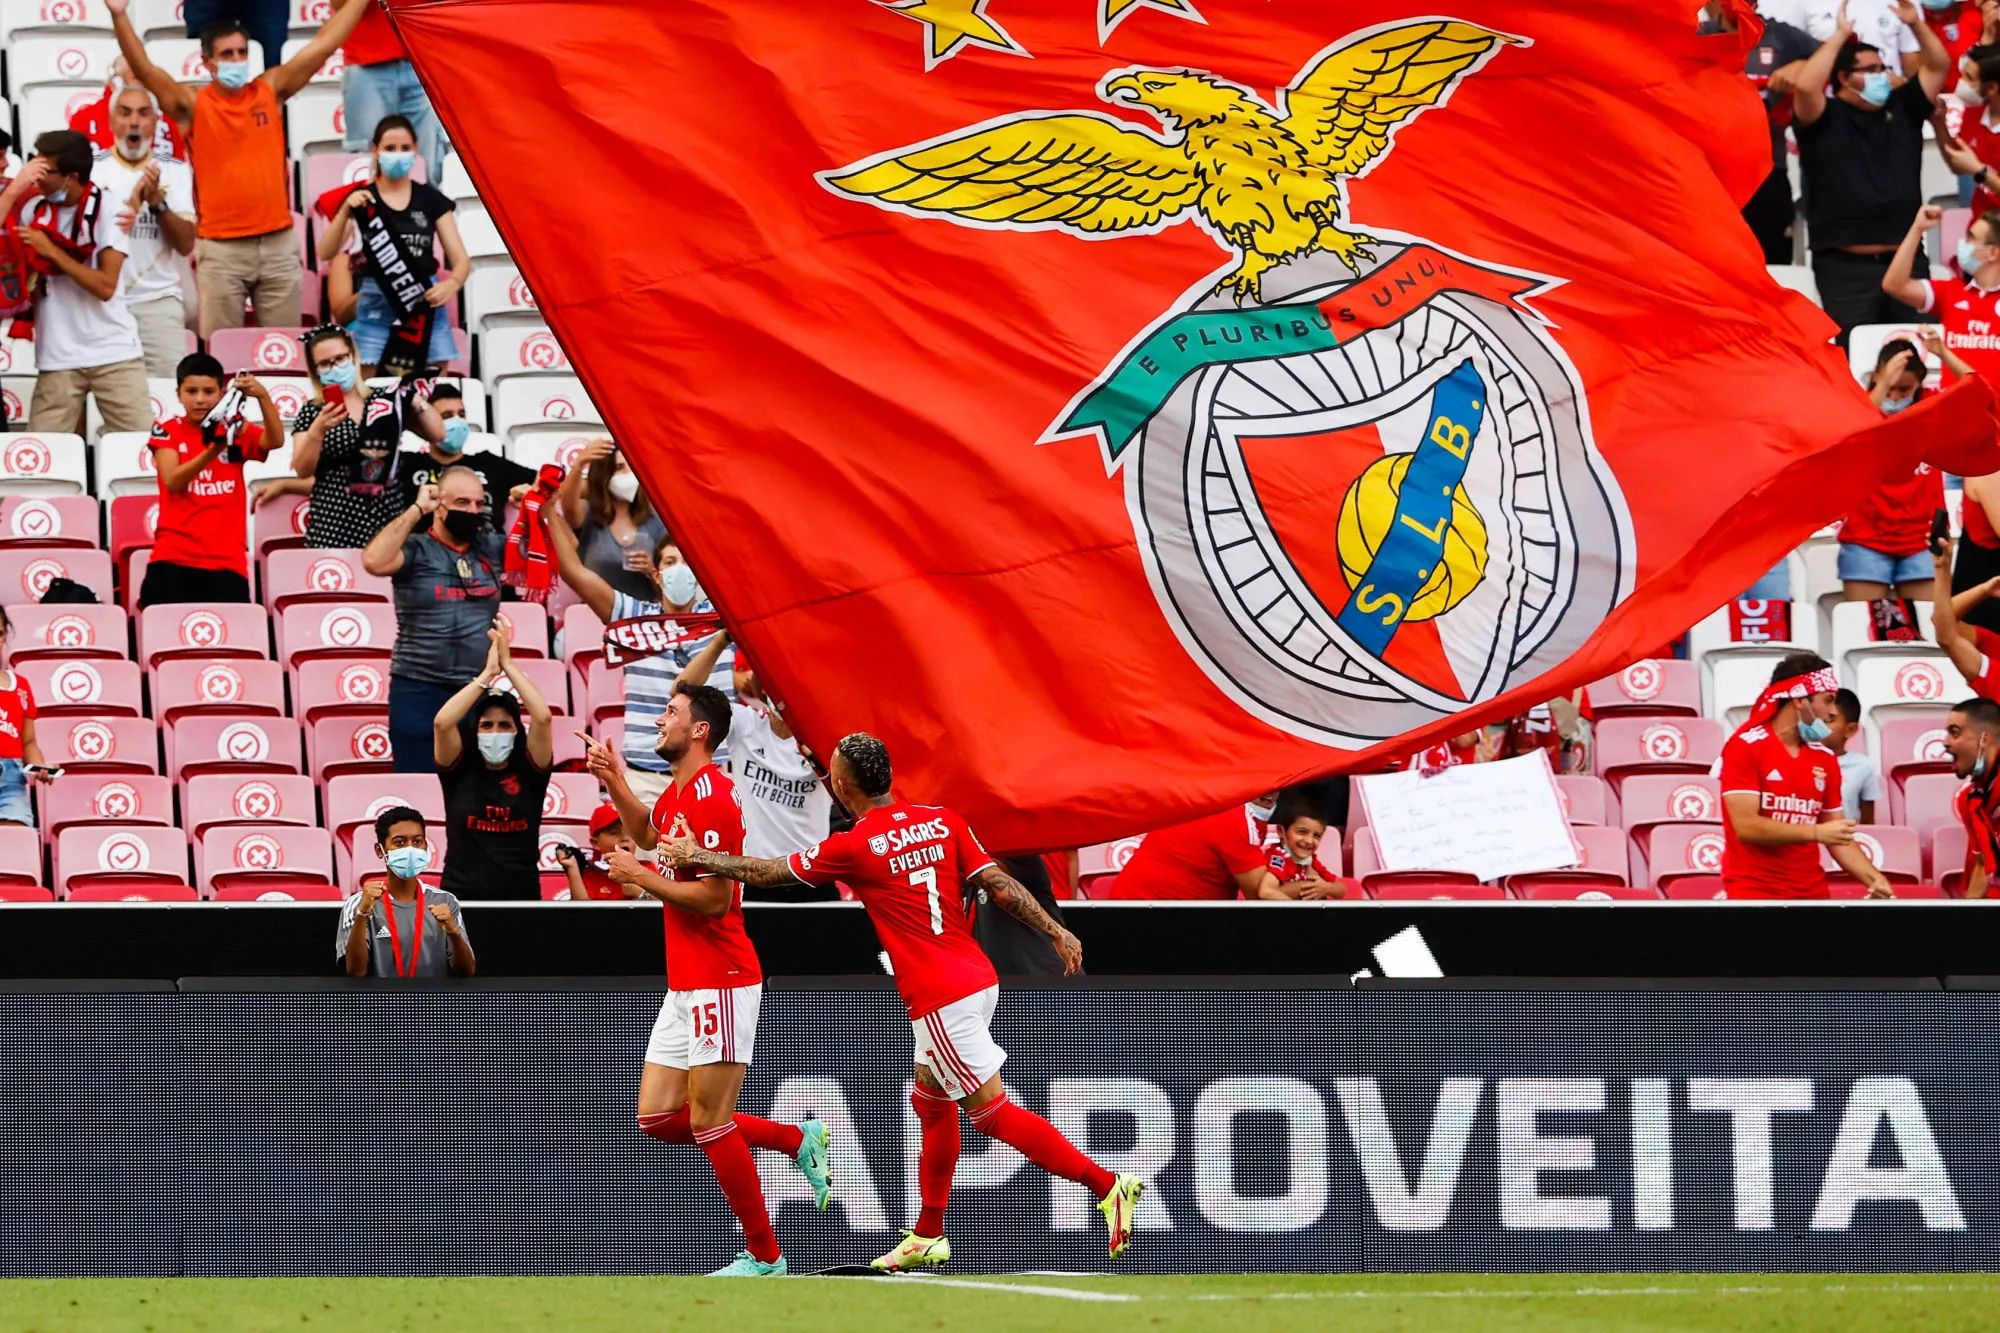 Pronostic Braga Benfica : Analyse, cotes et prono du match du championnat du Portugal